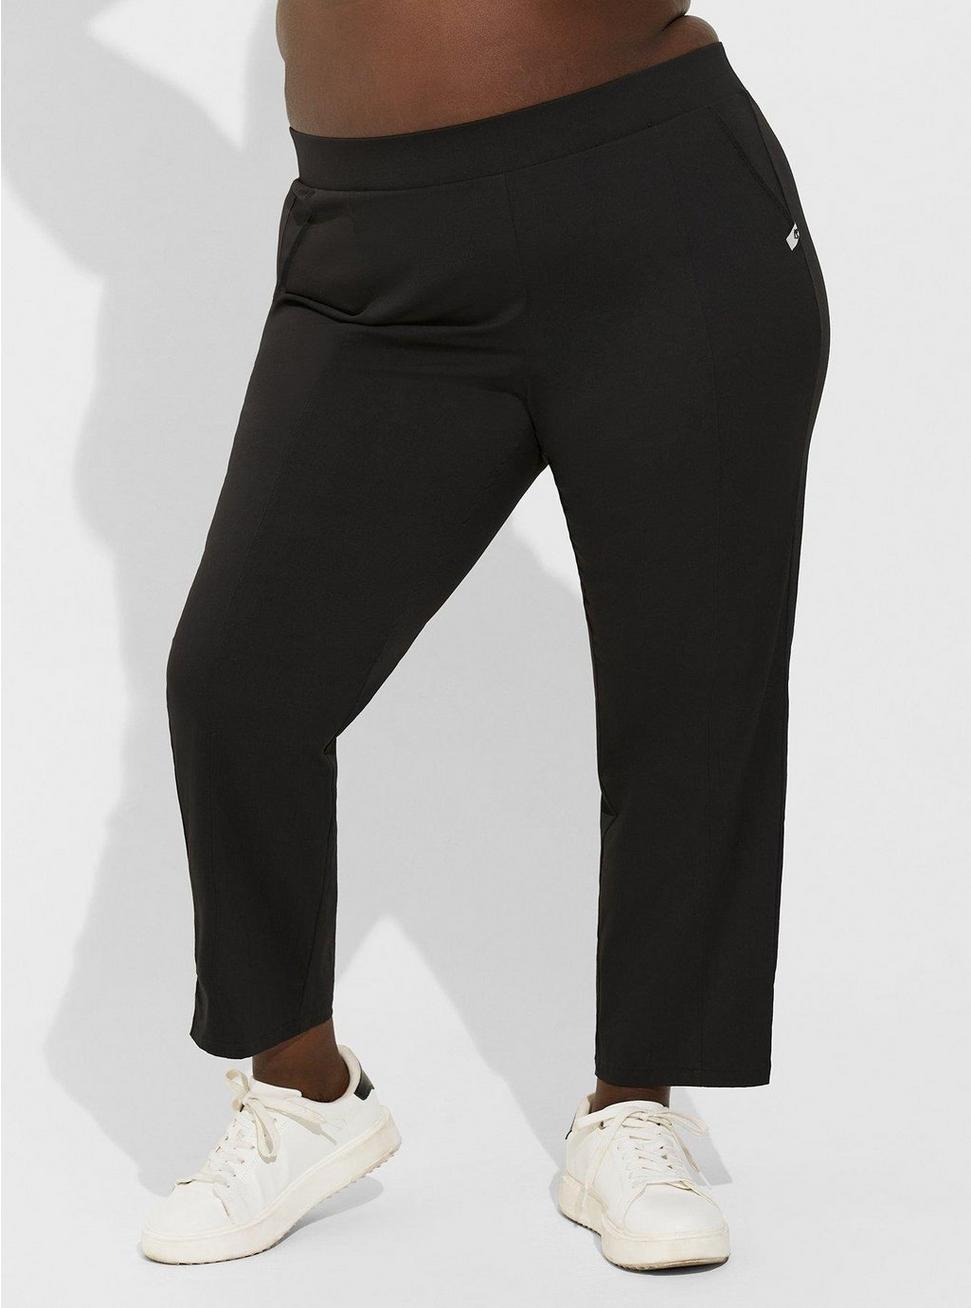 Ripstop Full Length Active Trouser, DEEP BLACK, alternate